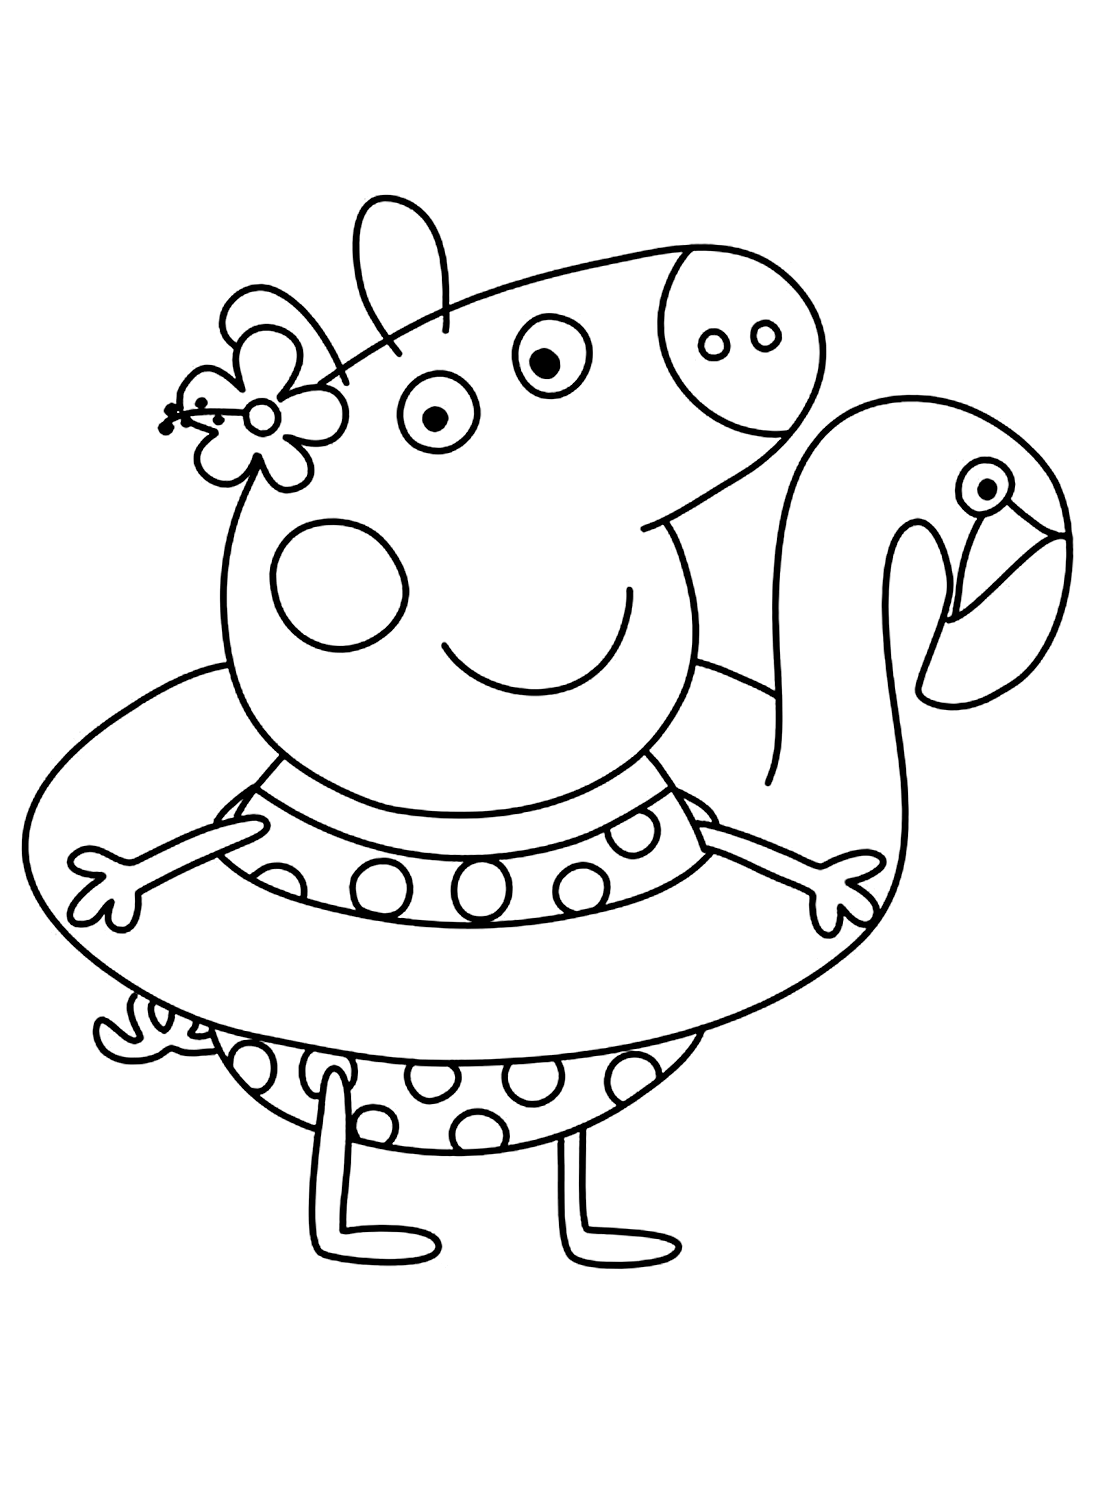 Красивый лист Свинки Пеппы из мультфильма «Свинка Пеппа»